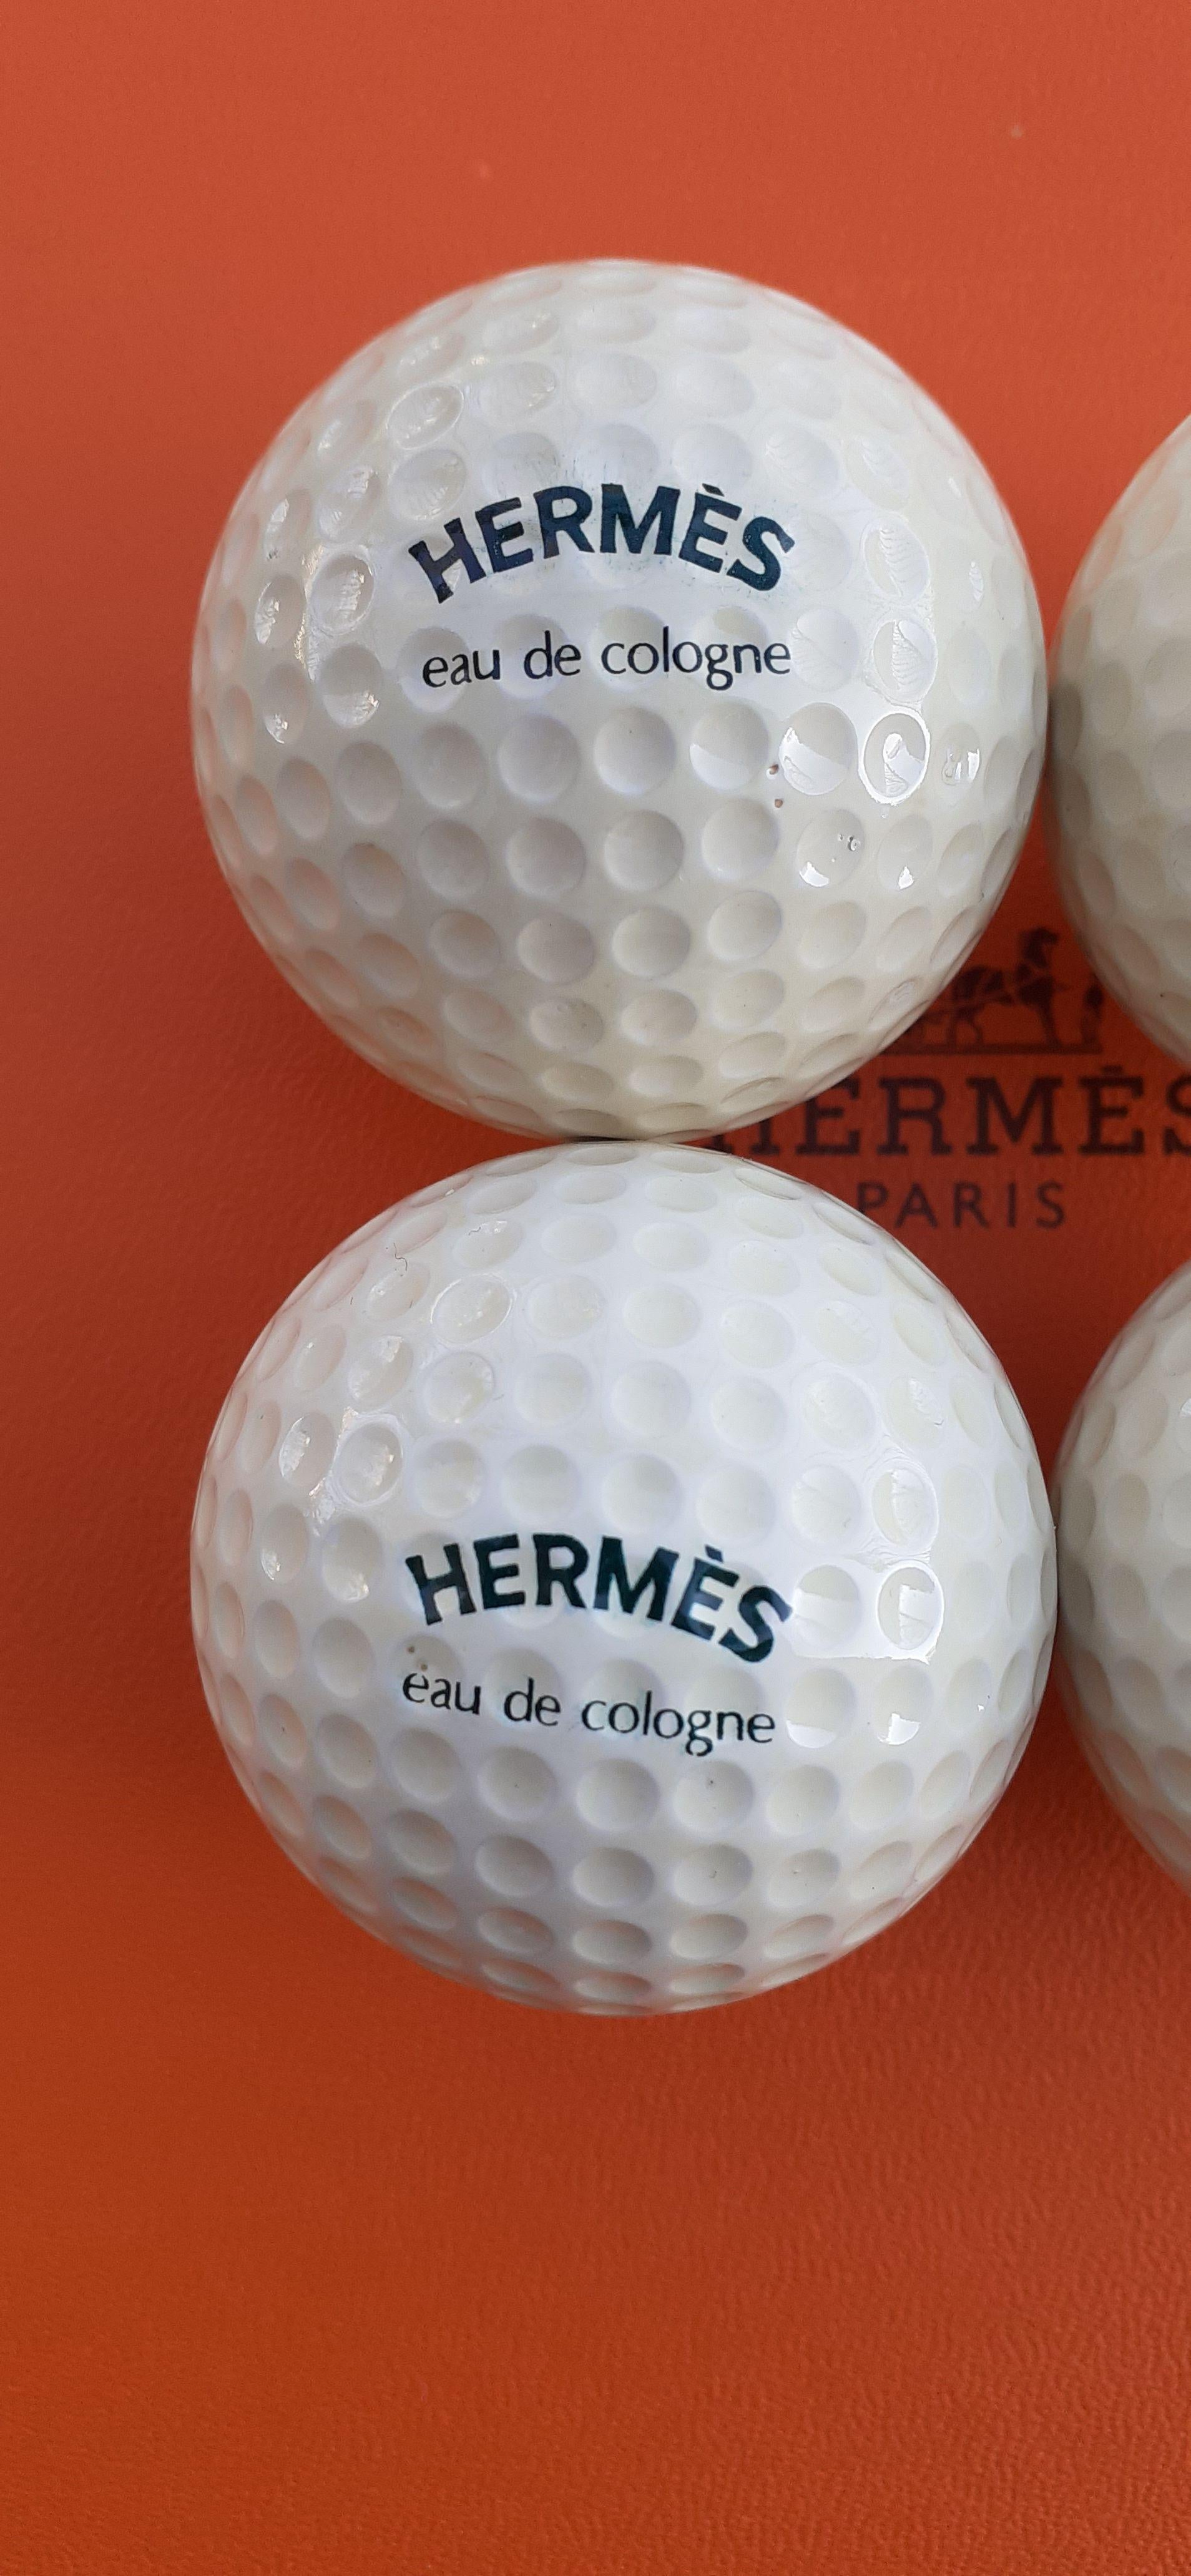 Super seltene authentische Hermès Golfbälle

Satz mit 4 Bällen

Echte Golfbälle, die den Normen entsprechen

Hermès hat unter dem Image seiner 